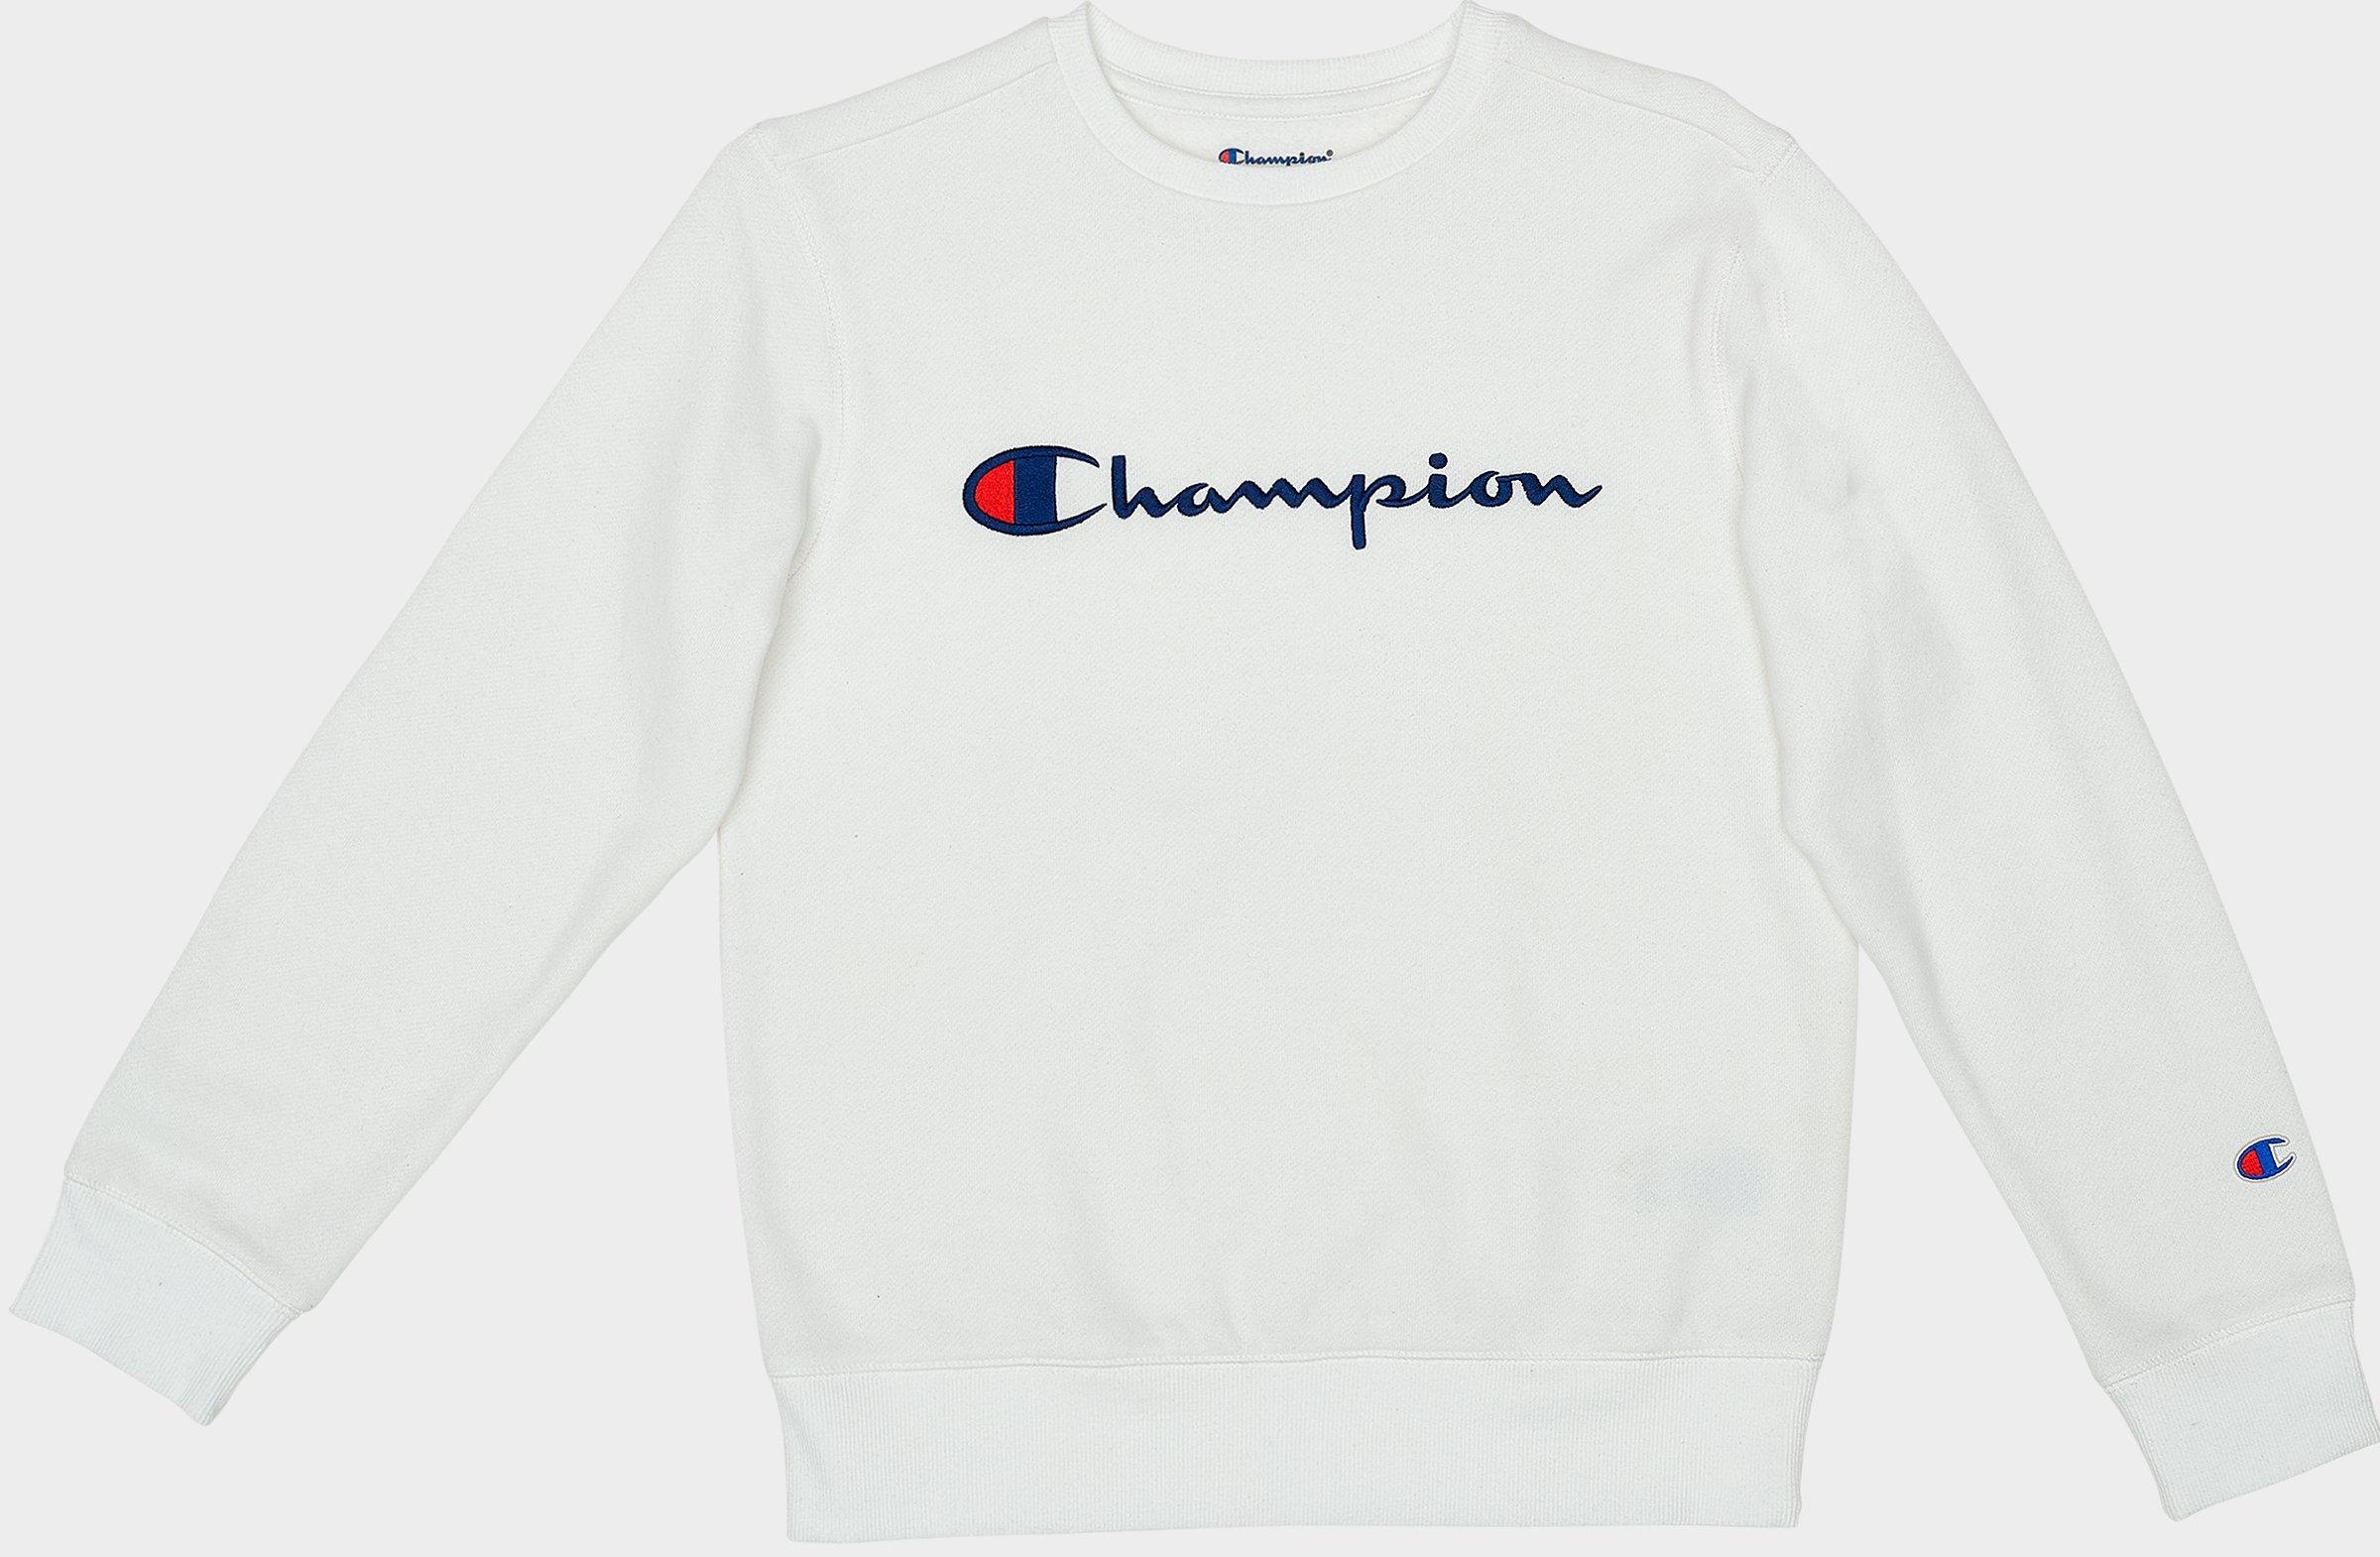 champion sweater kids